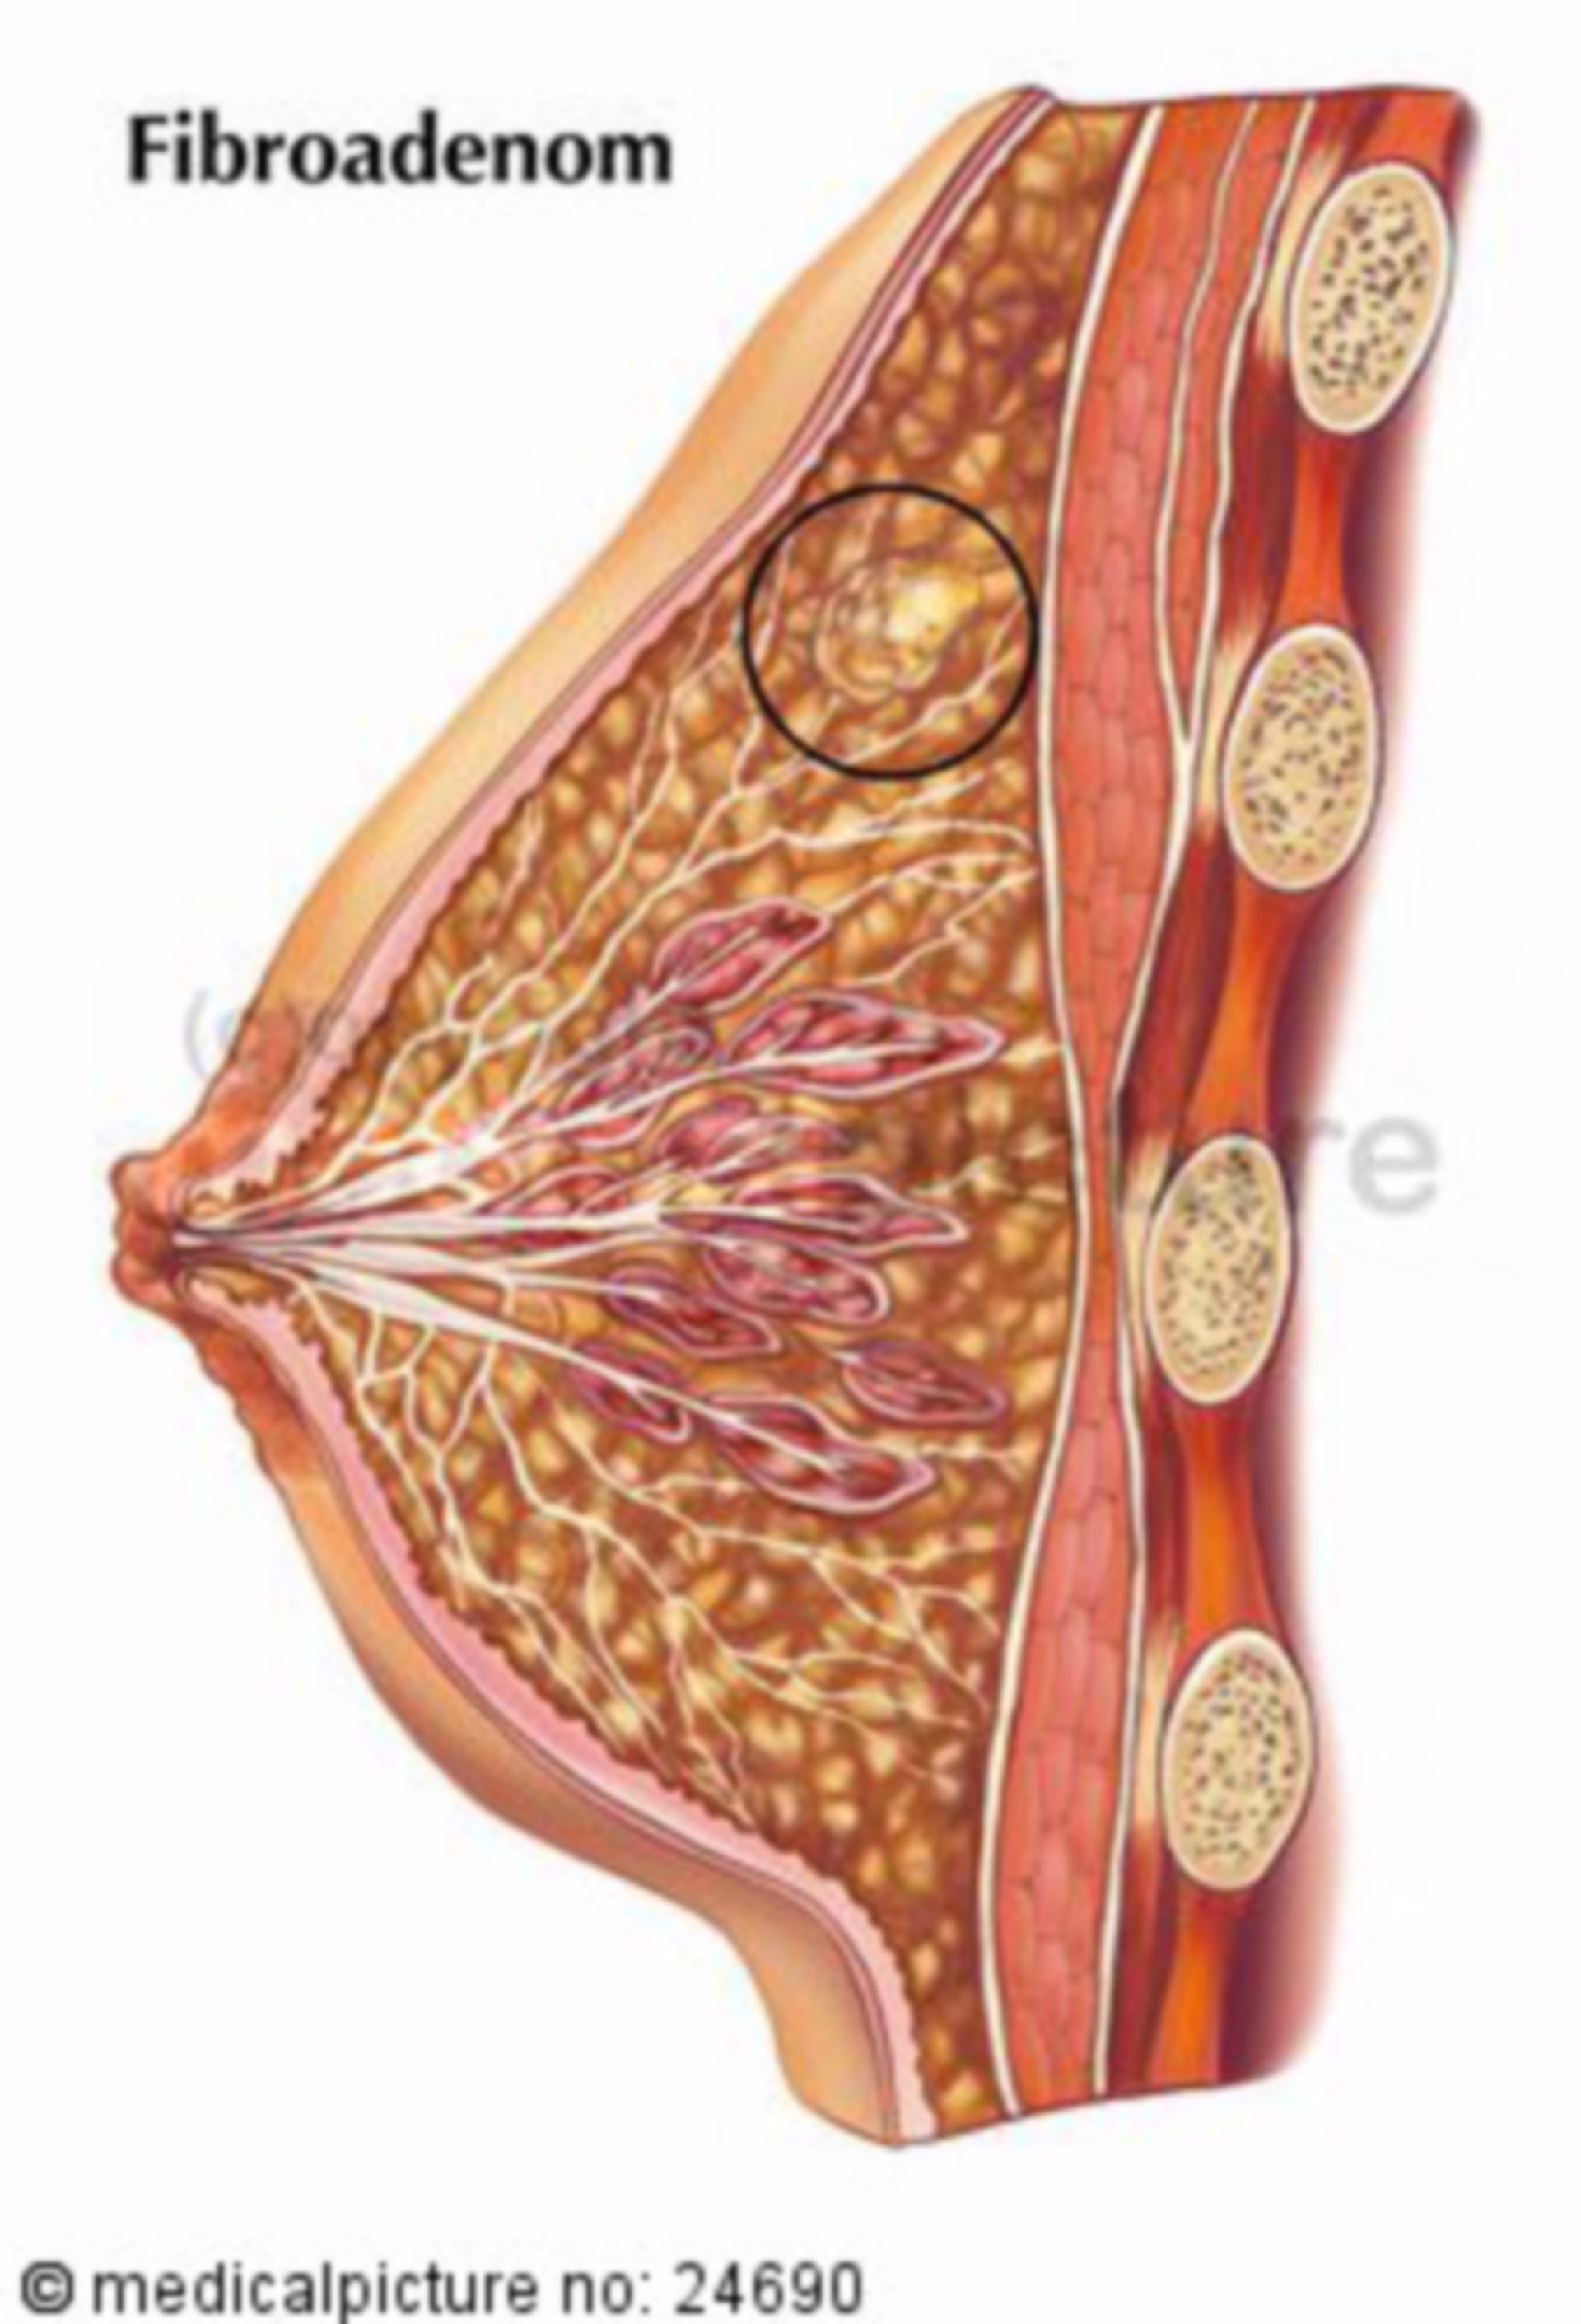 Fibroadenoma of female breast